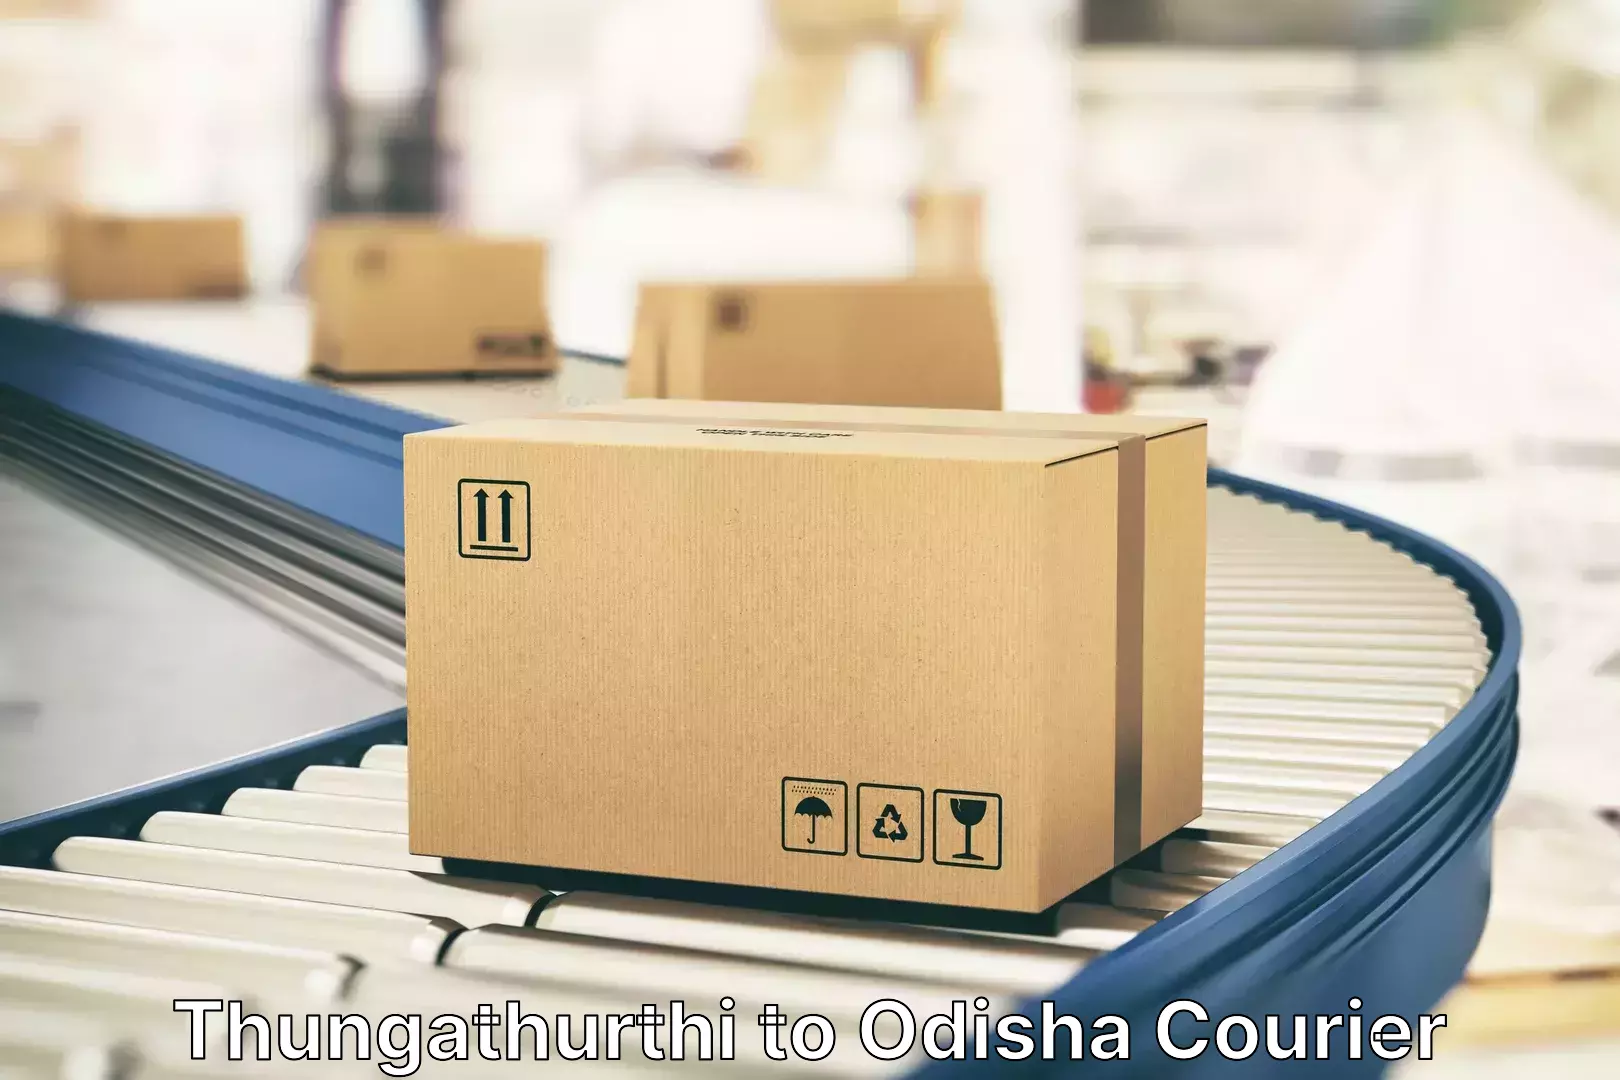 Luggage courier rates calculator Thungathurthi to Mahakalapada